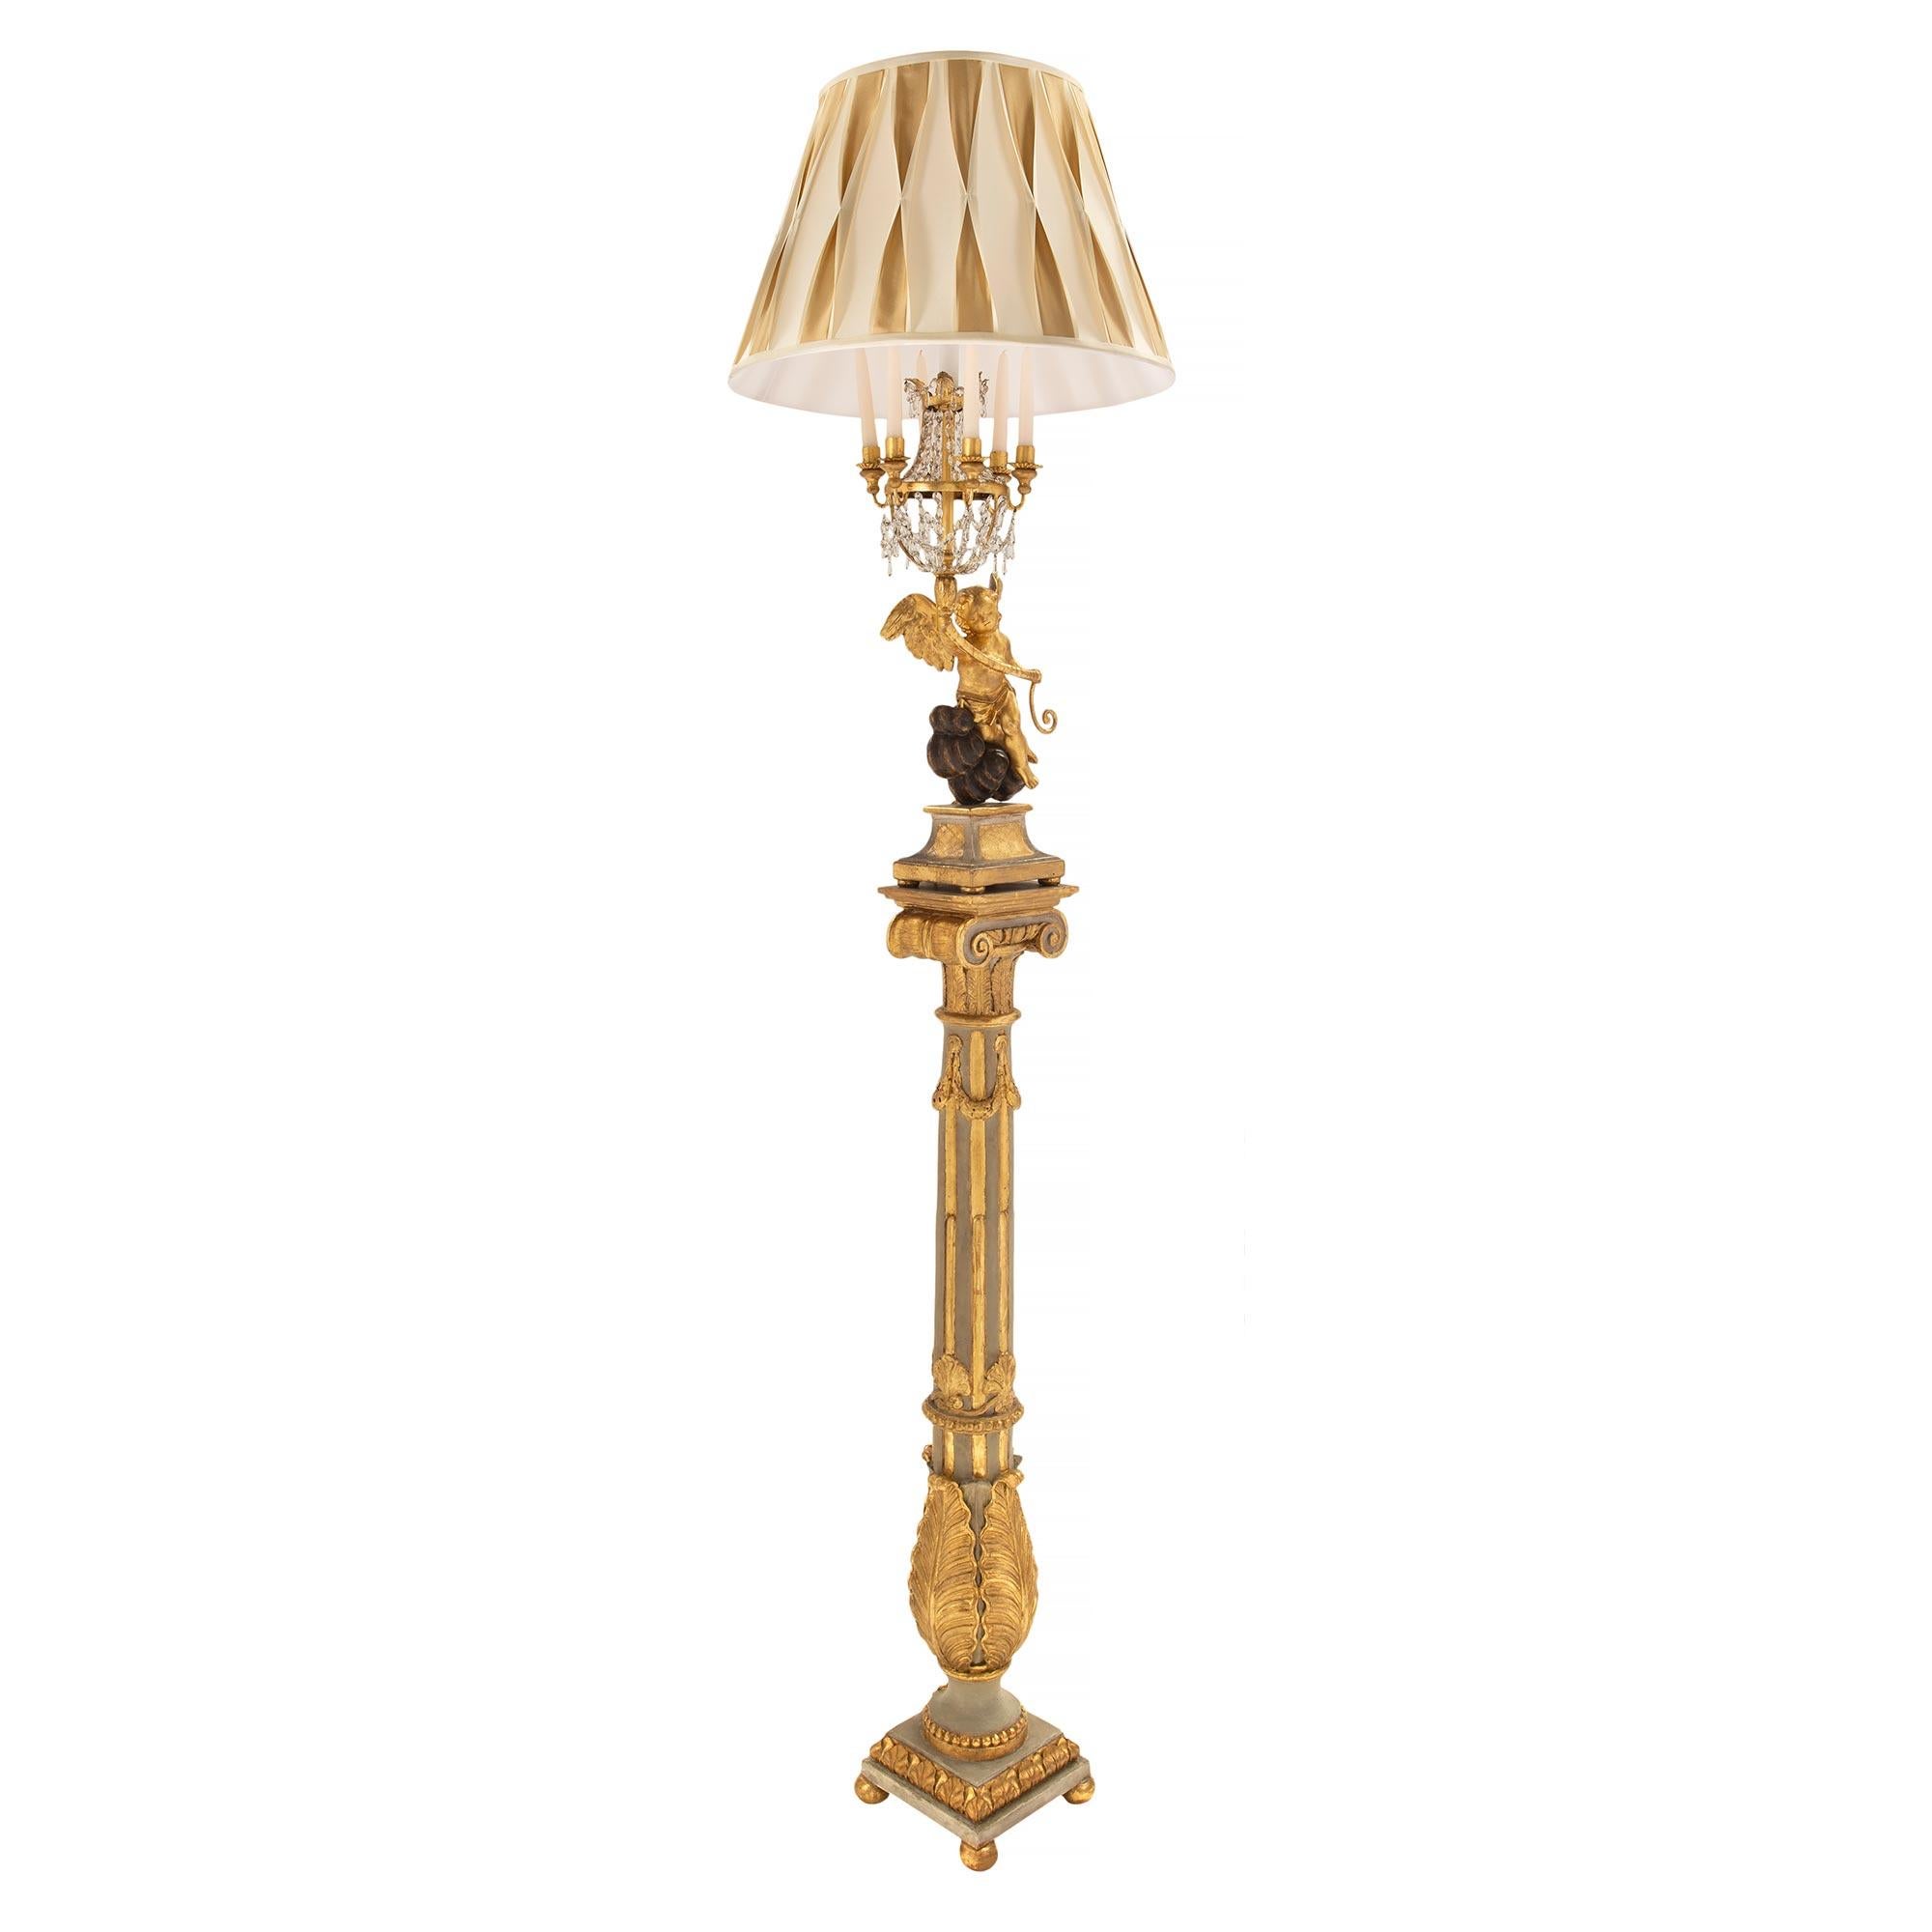 Ein atemberaubendes Paar italienischer Stehlampen im Louis-XVI-Stil des frühen 19. Jahrhunderts, patiniert, aus vergoldetem Holz und schwarzer Polychromie. Jede Stehlampe steht auf einem quadratischen Sockel mit feinen Kugelfüßen und einem